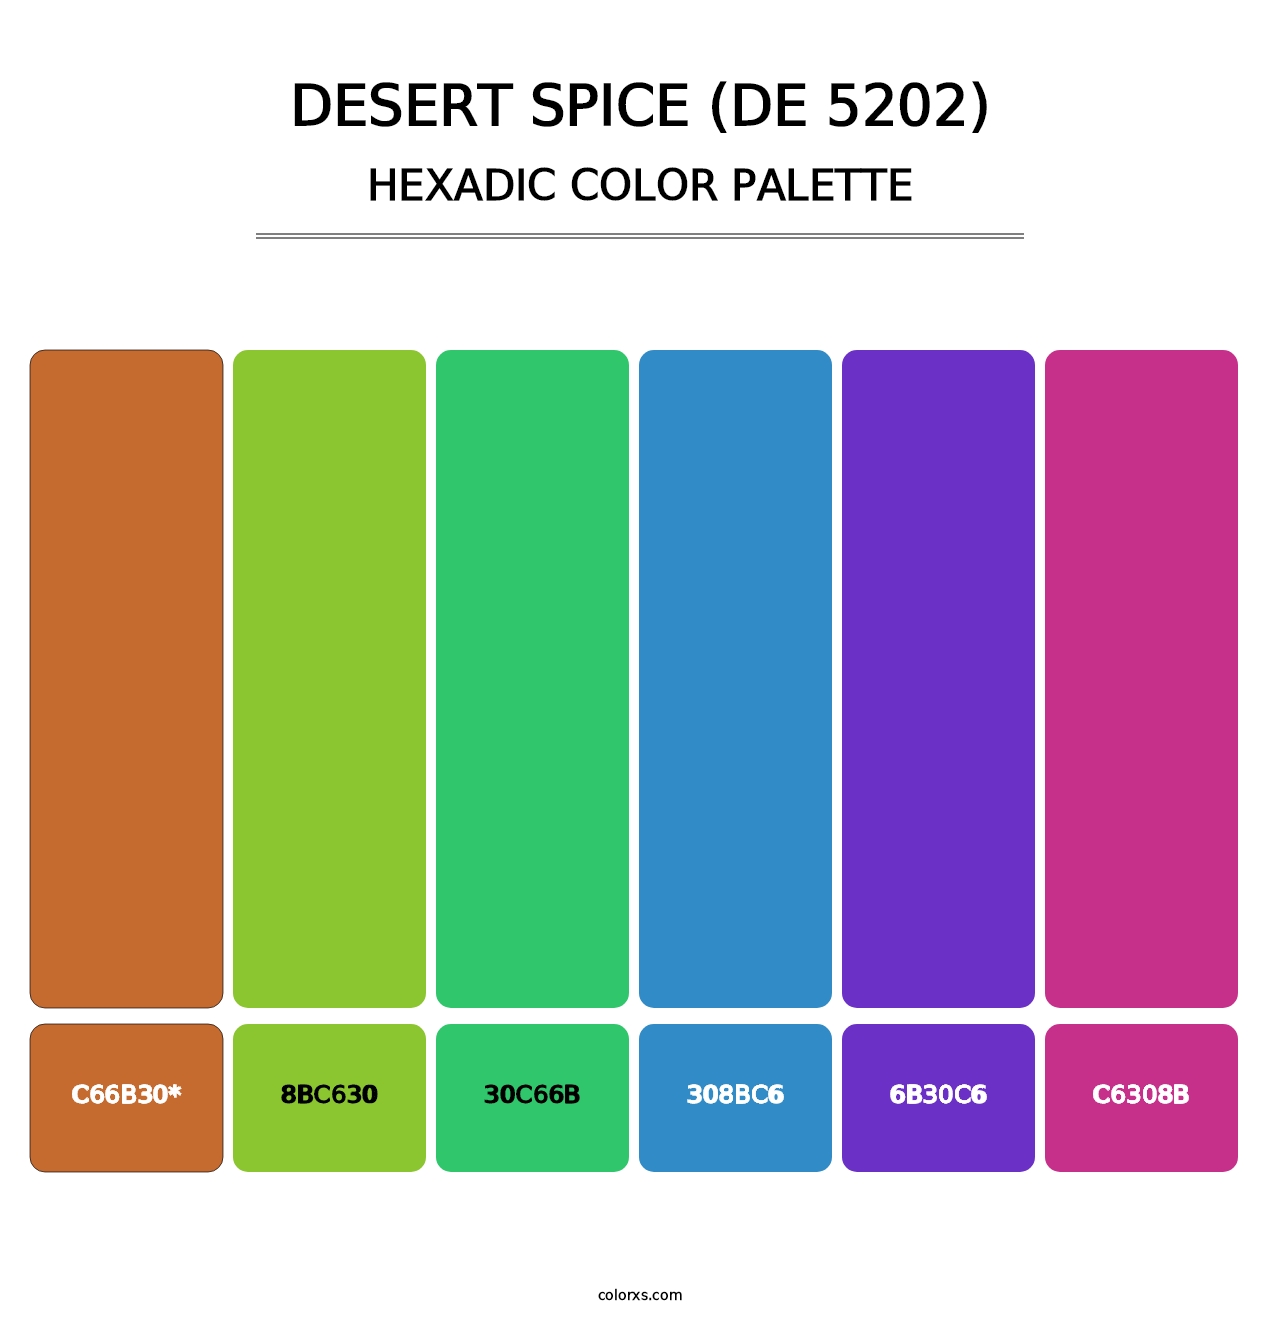 Desert Spice (DE 5202) - Hexadic Color Palette